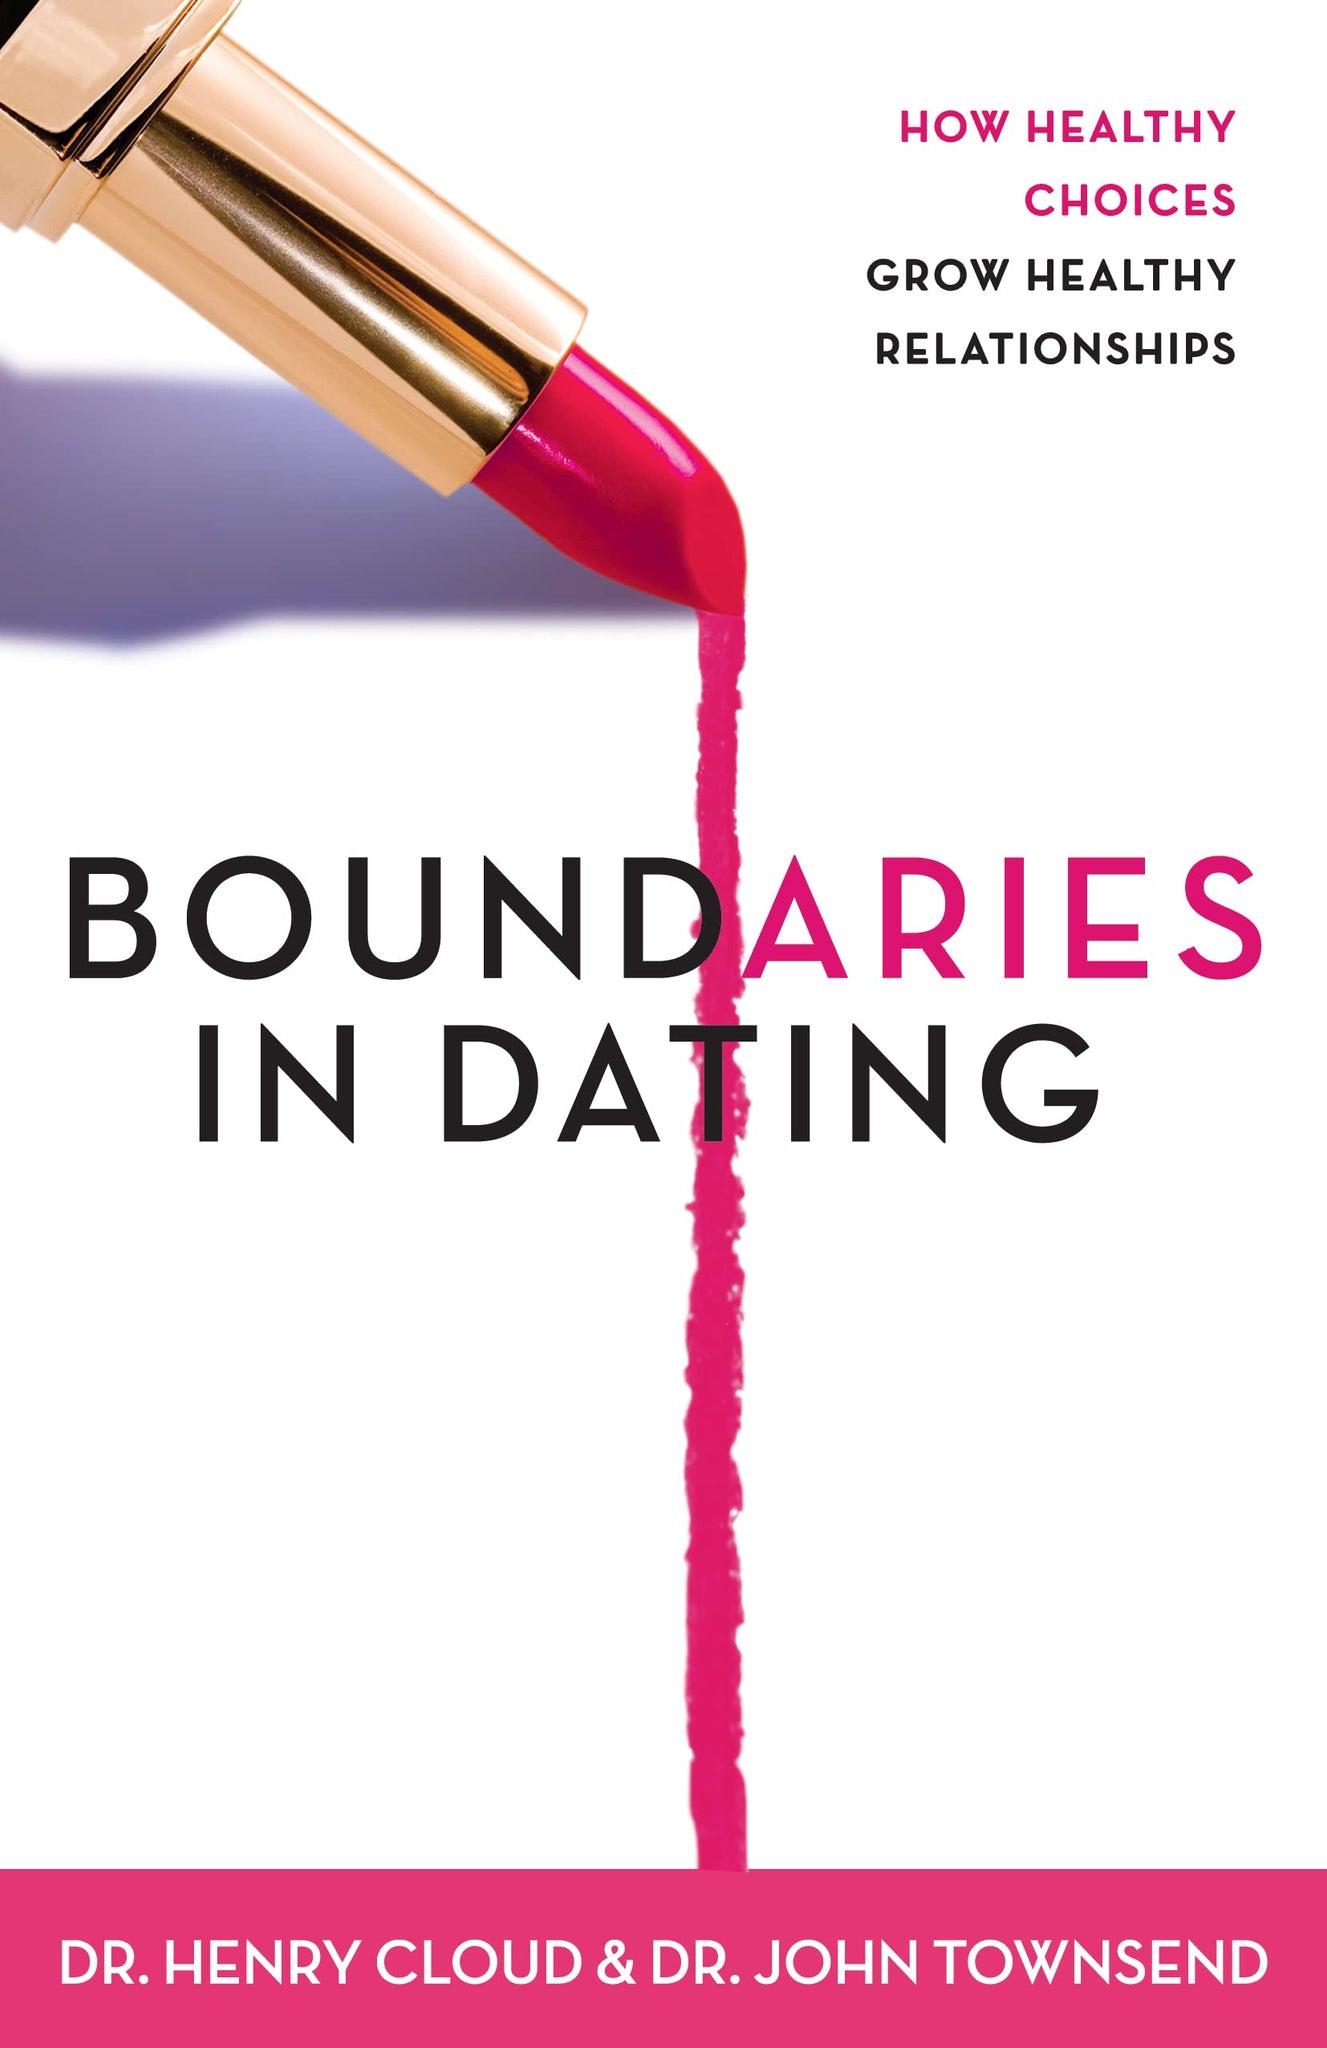 Boundaries in Dating: Making Daring Work by Henry Cloud